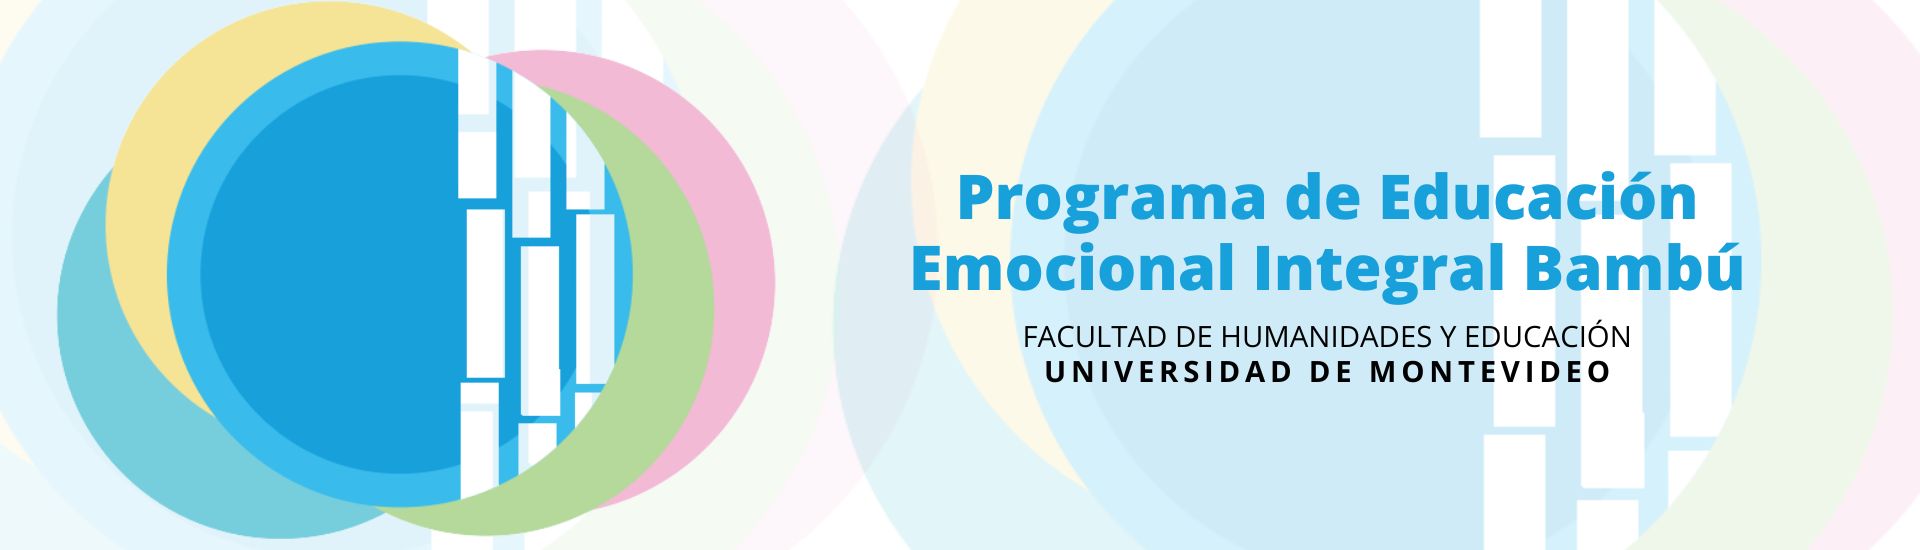 Cabecera Educación Emocional, Programa Bambú, Universidad de Montevideo